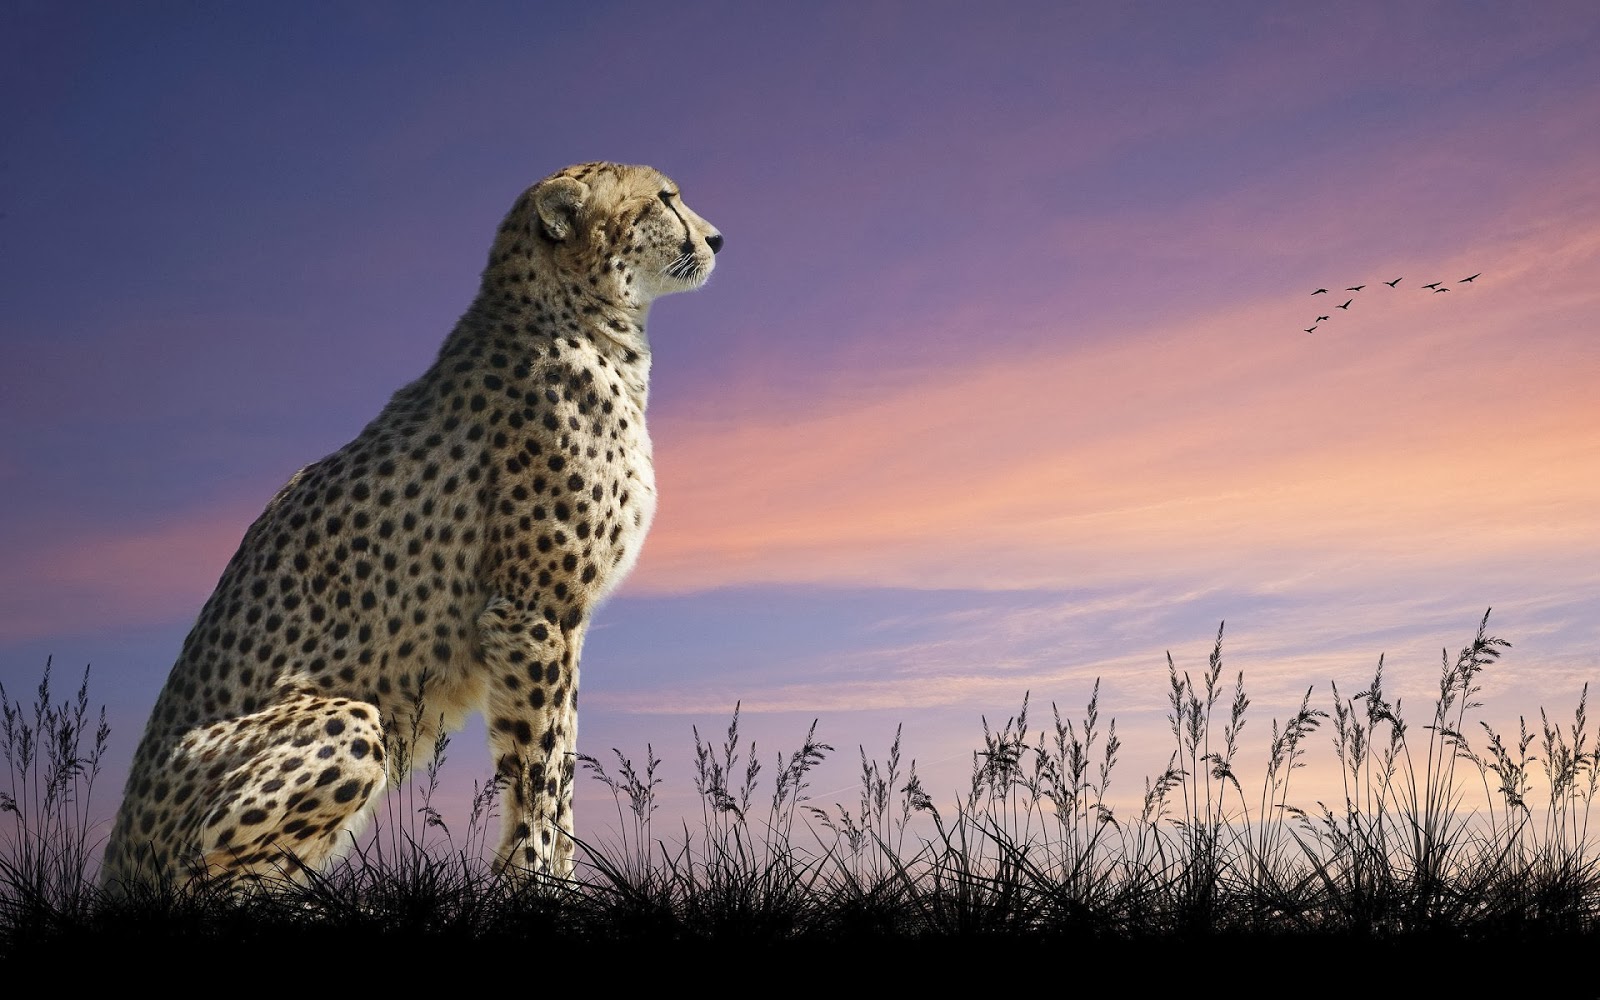 Wallpaper Of A Sitting Cheetah , HD Wallpaper & Backgrounds